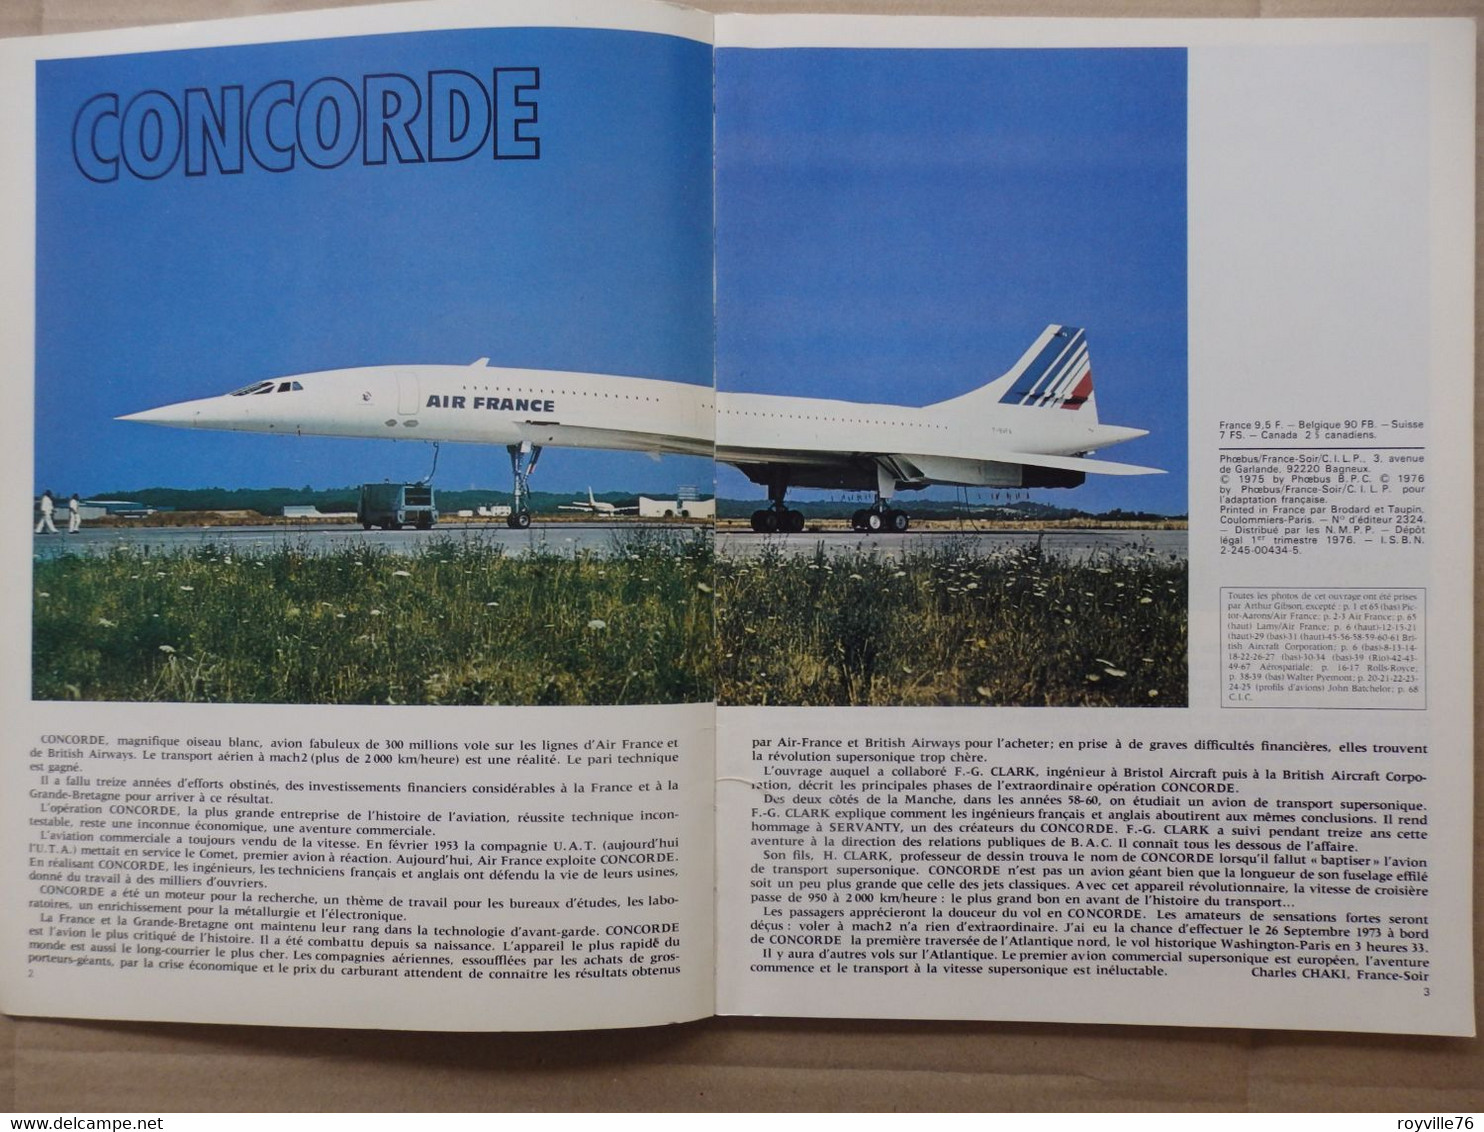 Edition Spécial France-Soir 66 P. Entièrement Dédié Au Concorde 1975 - Revistas De Abordo